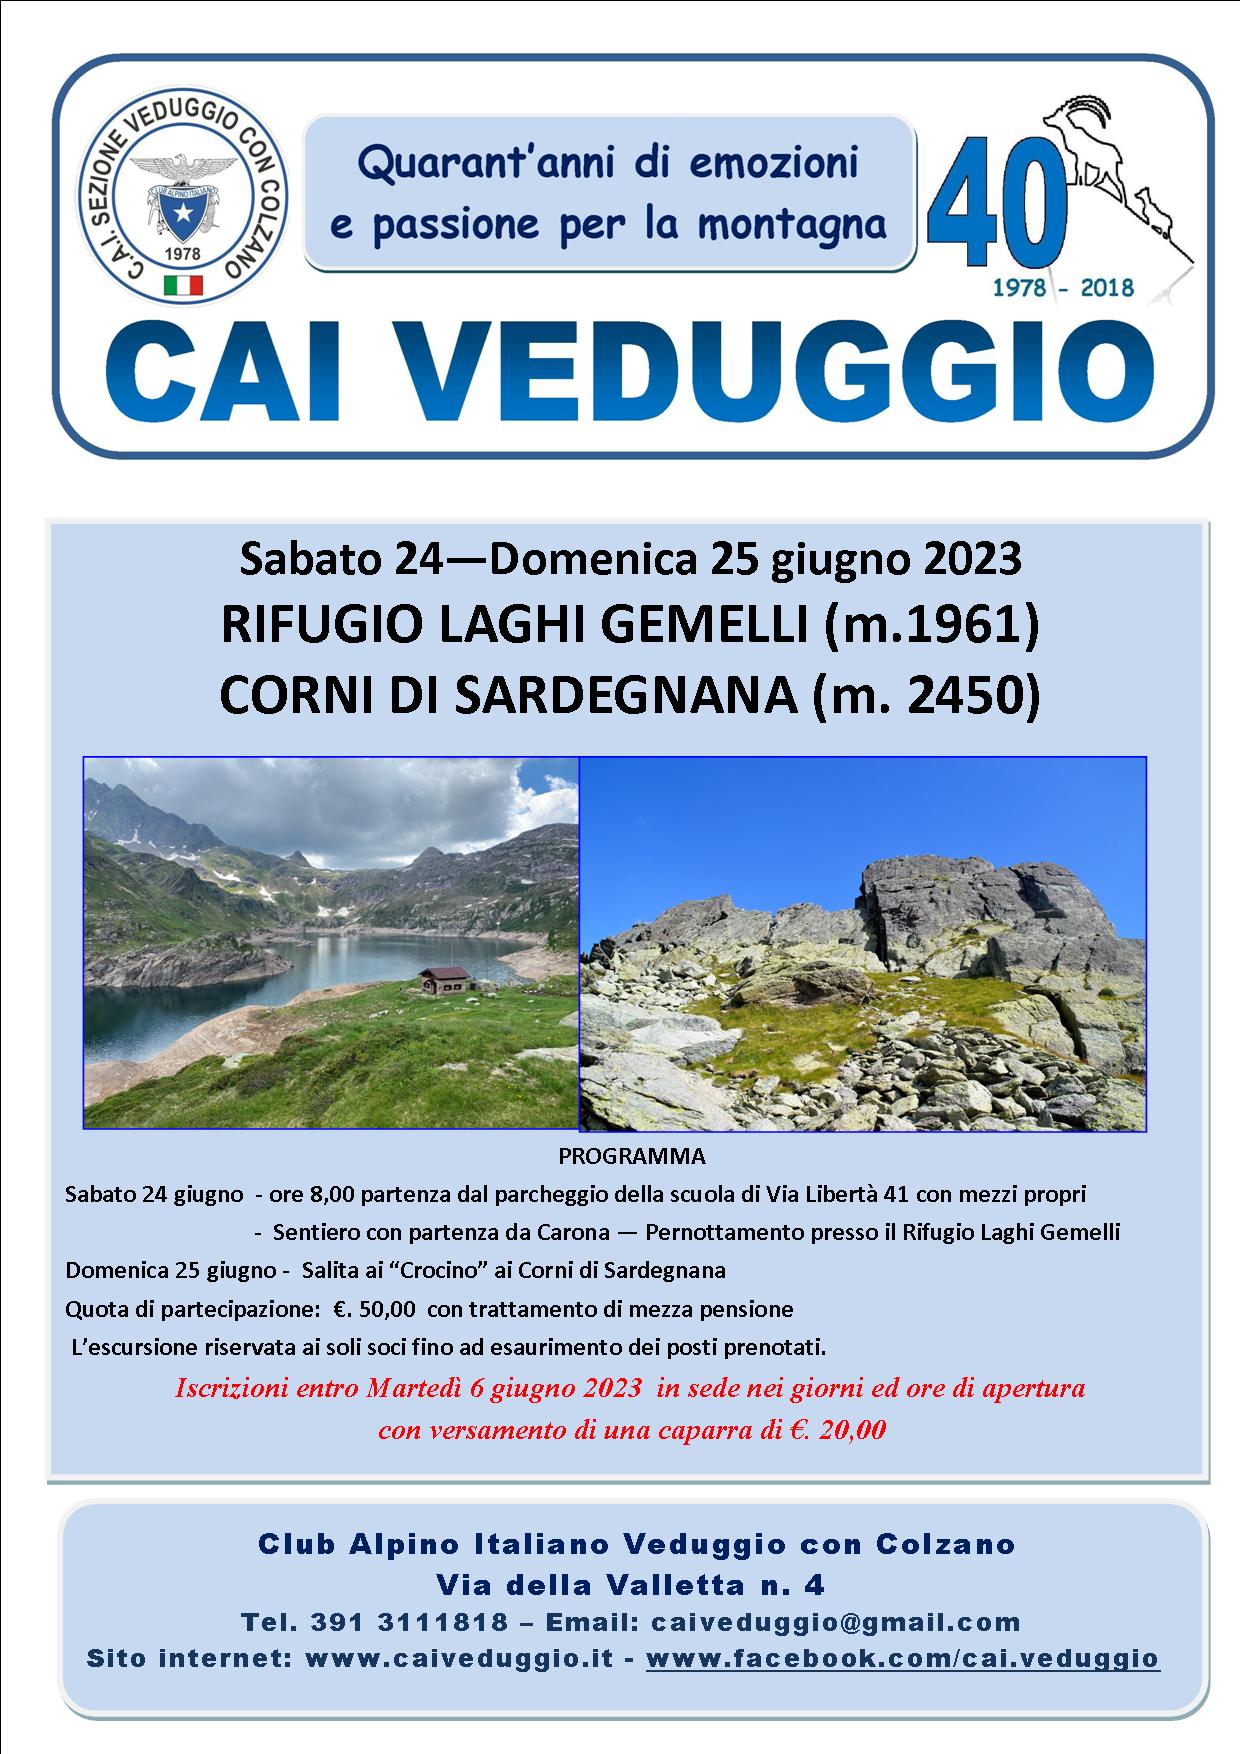 Sabato 24 – Domenica 25 giugno 2023 – Rifugio Laghi Gemelli – Corni di Sardegnana